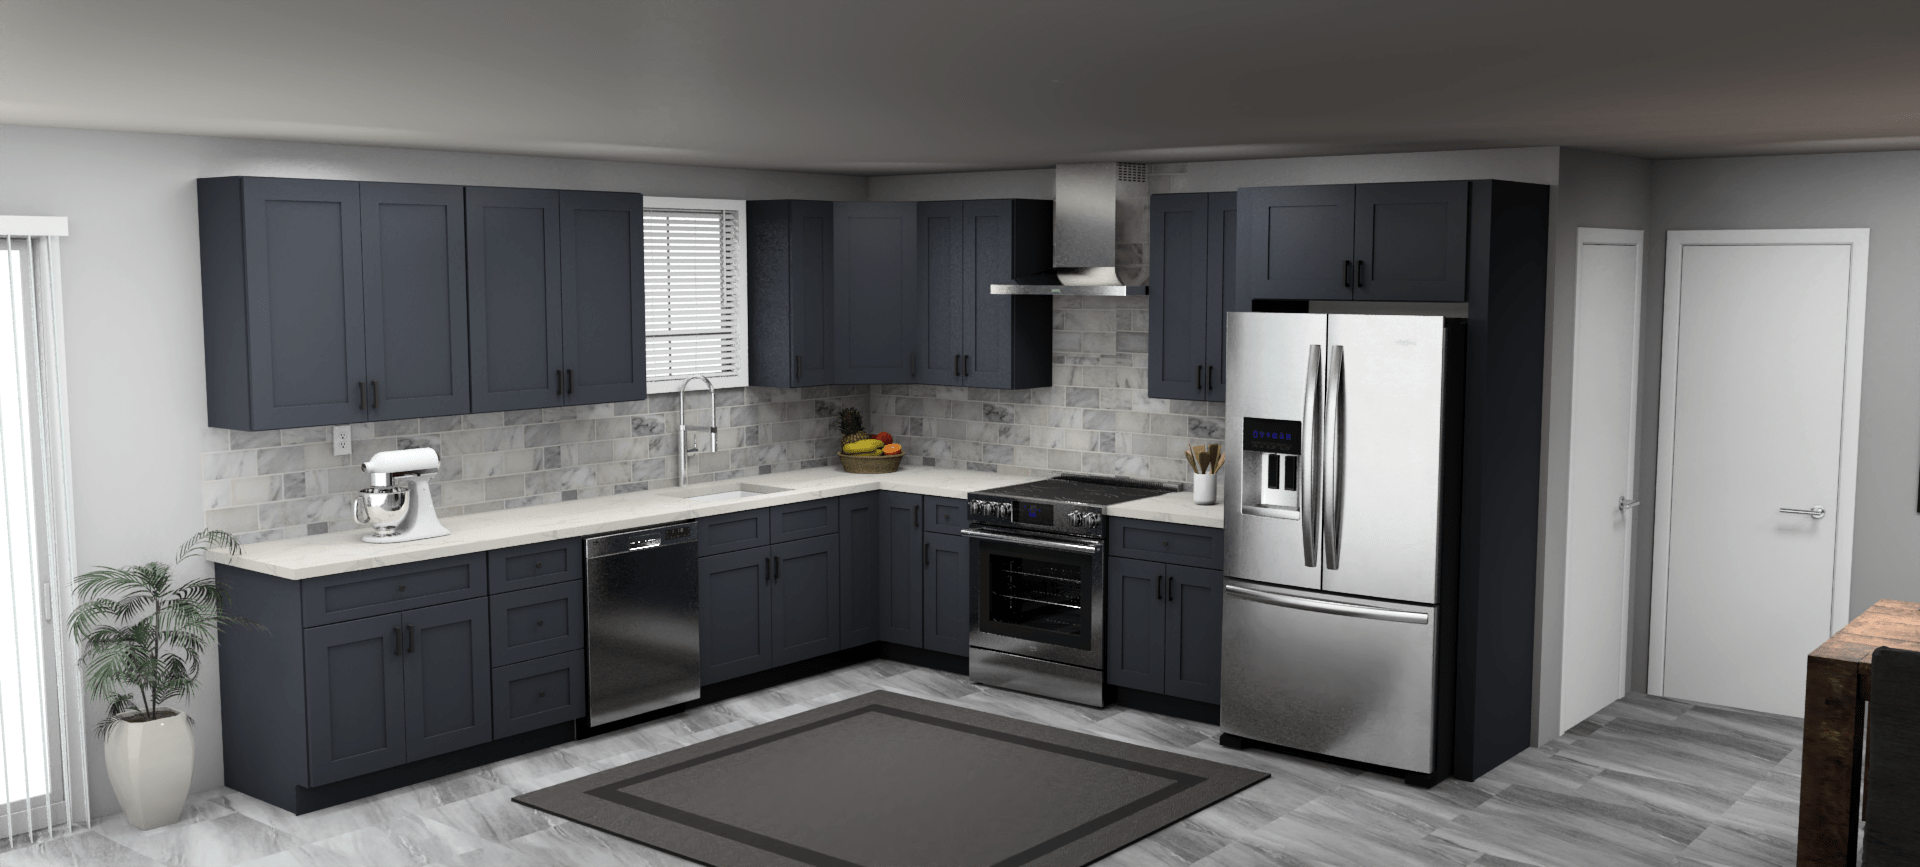 Fabuwood Allure Galaxy Indigo 12 x 12 L Shaped Kitchen Main Layout Photo